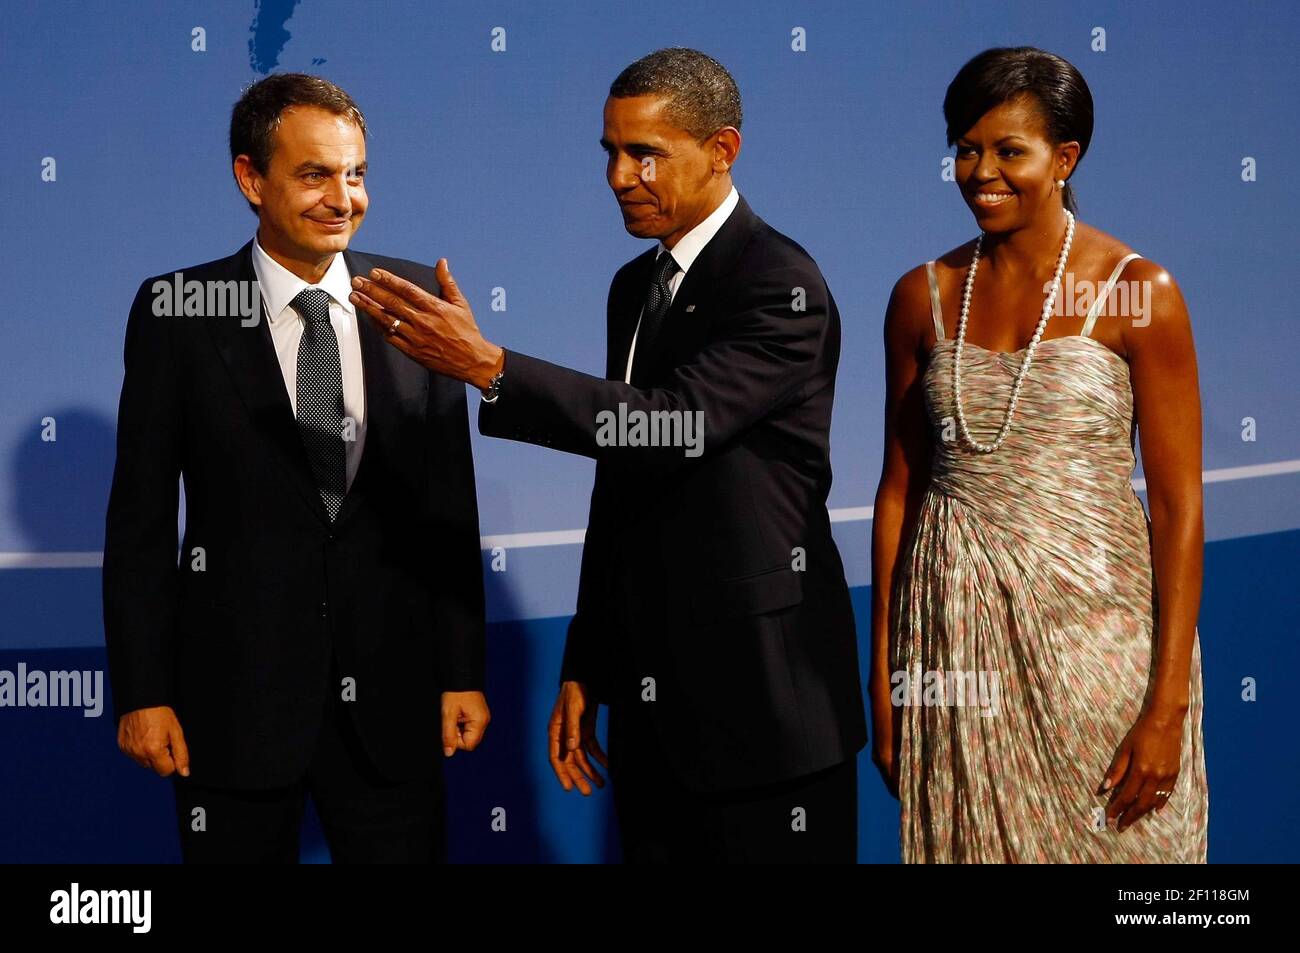 24 de septiembre de 2009 - Pittsburgh, Pensilvania - el presidente de EE.UU., Barack Obama (C) y la primera dama de EE.UU., Michelle Obama (R) dan la bienvenida al presidente español, José Luis Rodríguez Zapatero, a la cena de bienvenida para los líderes del G-20 en el Conservatorio Phipps, el 24 de septiembre de 2009 en Pittsburgh, Pensilvania. Los jefes de estado de las principales potencias económicas del mundo llegaron hoy para la cumbre de dos días del G-20 celebrada en el Centro de Convenciones David L. Lawrence con el objetivo de promover el crecimiento económico. Crédito de la foto: Win McNamee/Pool/Sipa Press/0909251423 Foto de stock